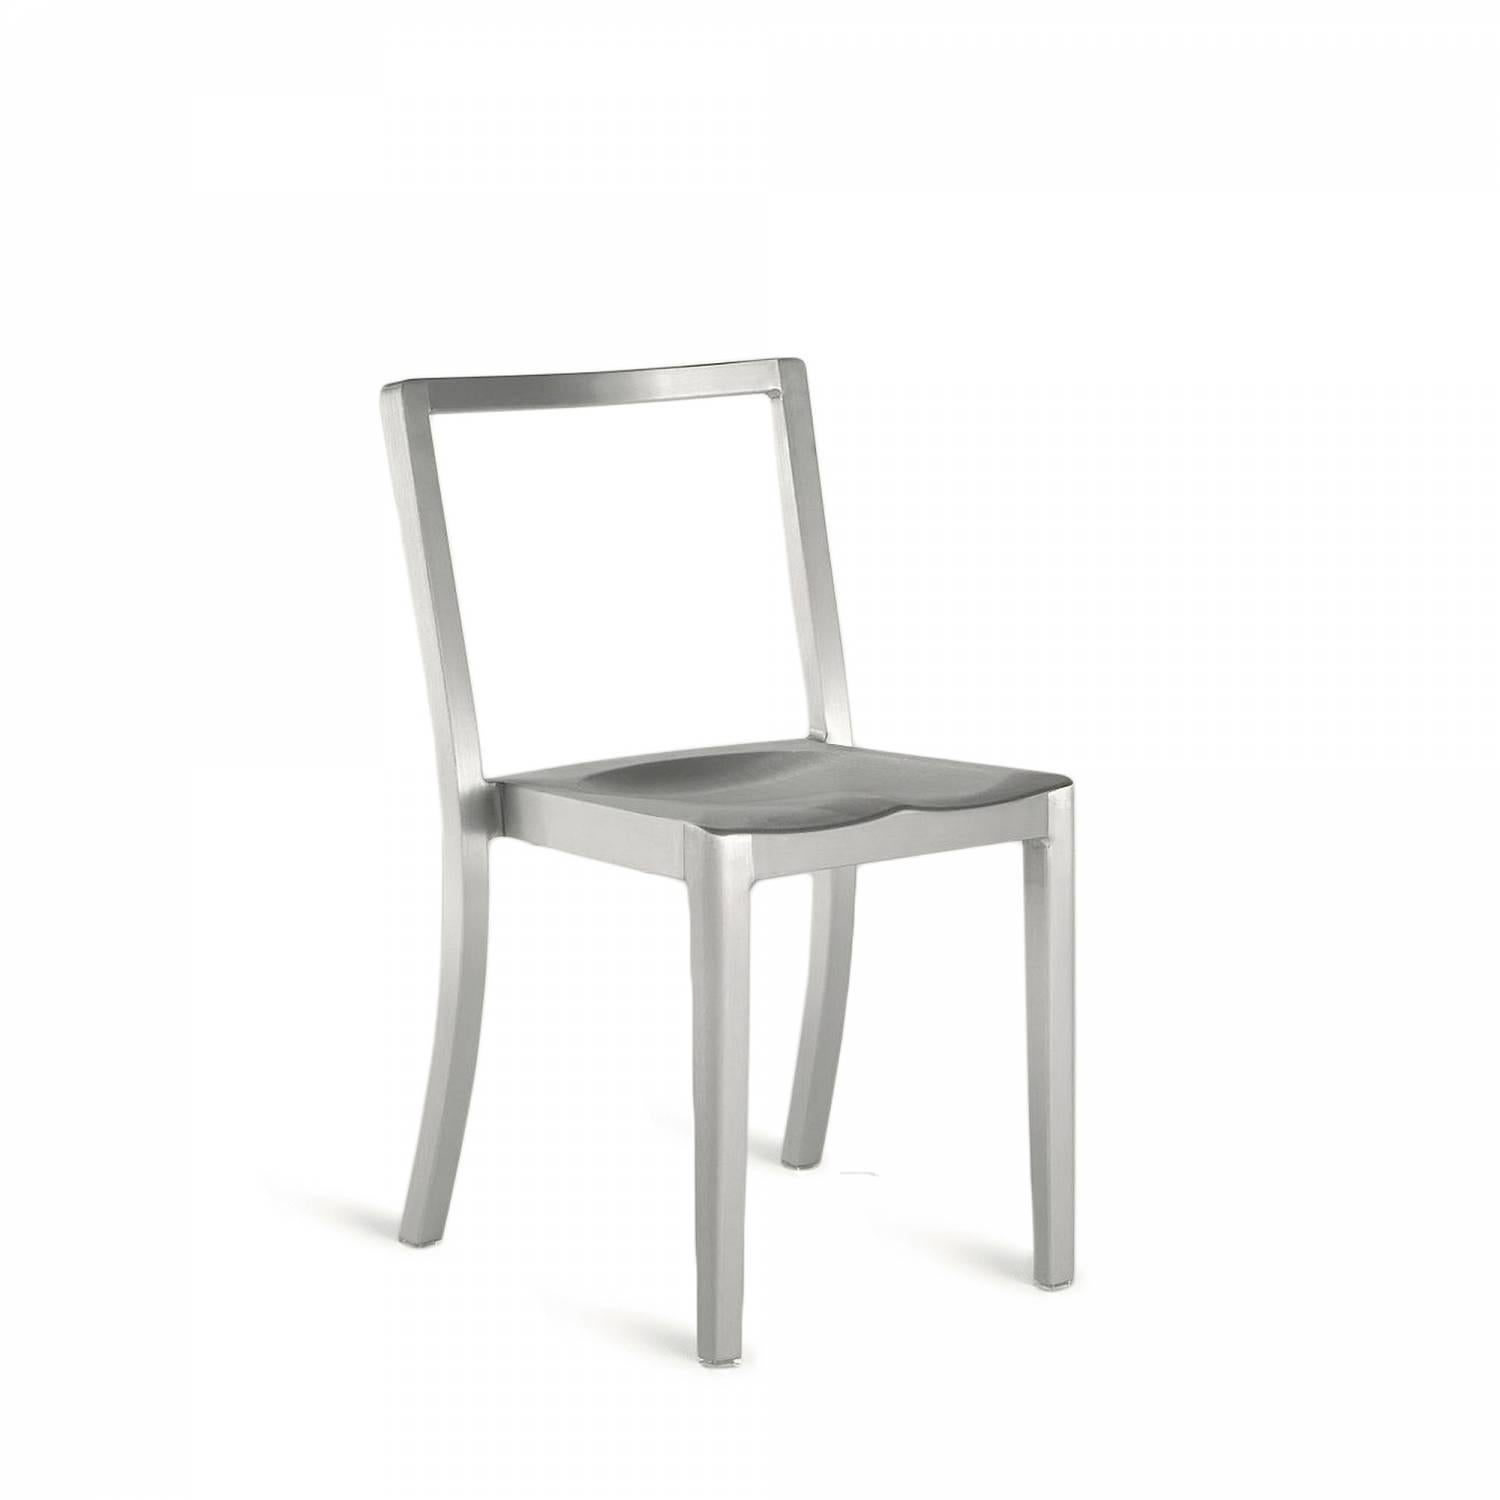 Icon ist ein stapelbarer Stuhl, der dem berühmten, von Starck entworfenen Hudson-Stuhl ähnelt. Es wird weltweit in Hotels, Bars und Restaurants, aber auch in Schulungszentren, Versammlungsräumen und Schulen eingesetzt. Starck beschreibt Icon als